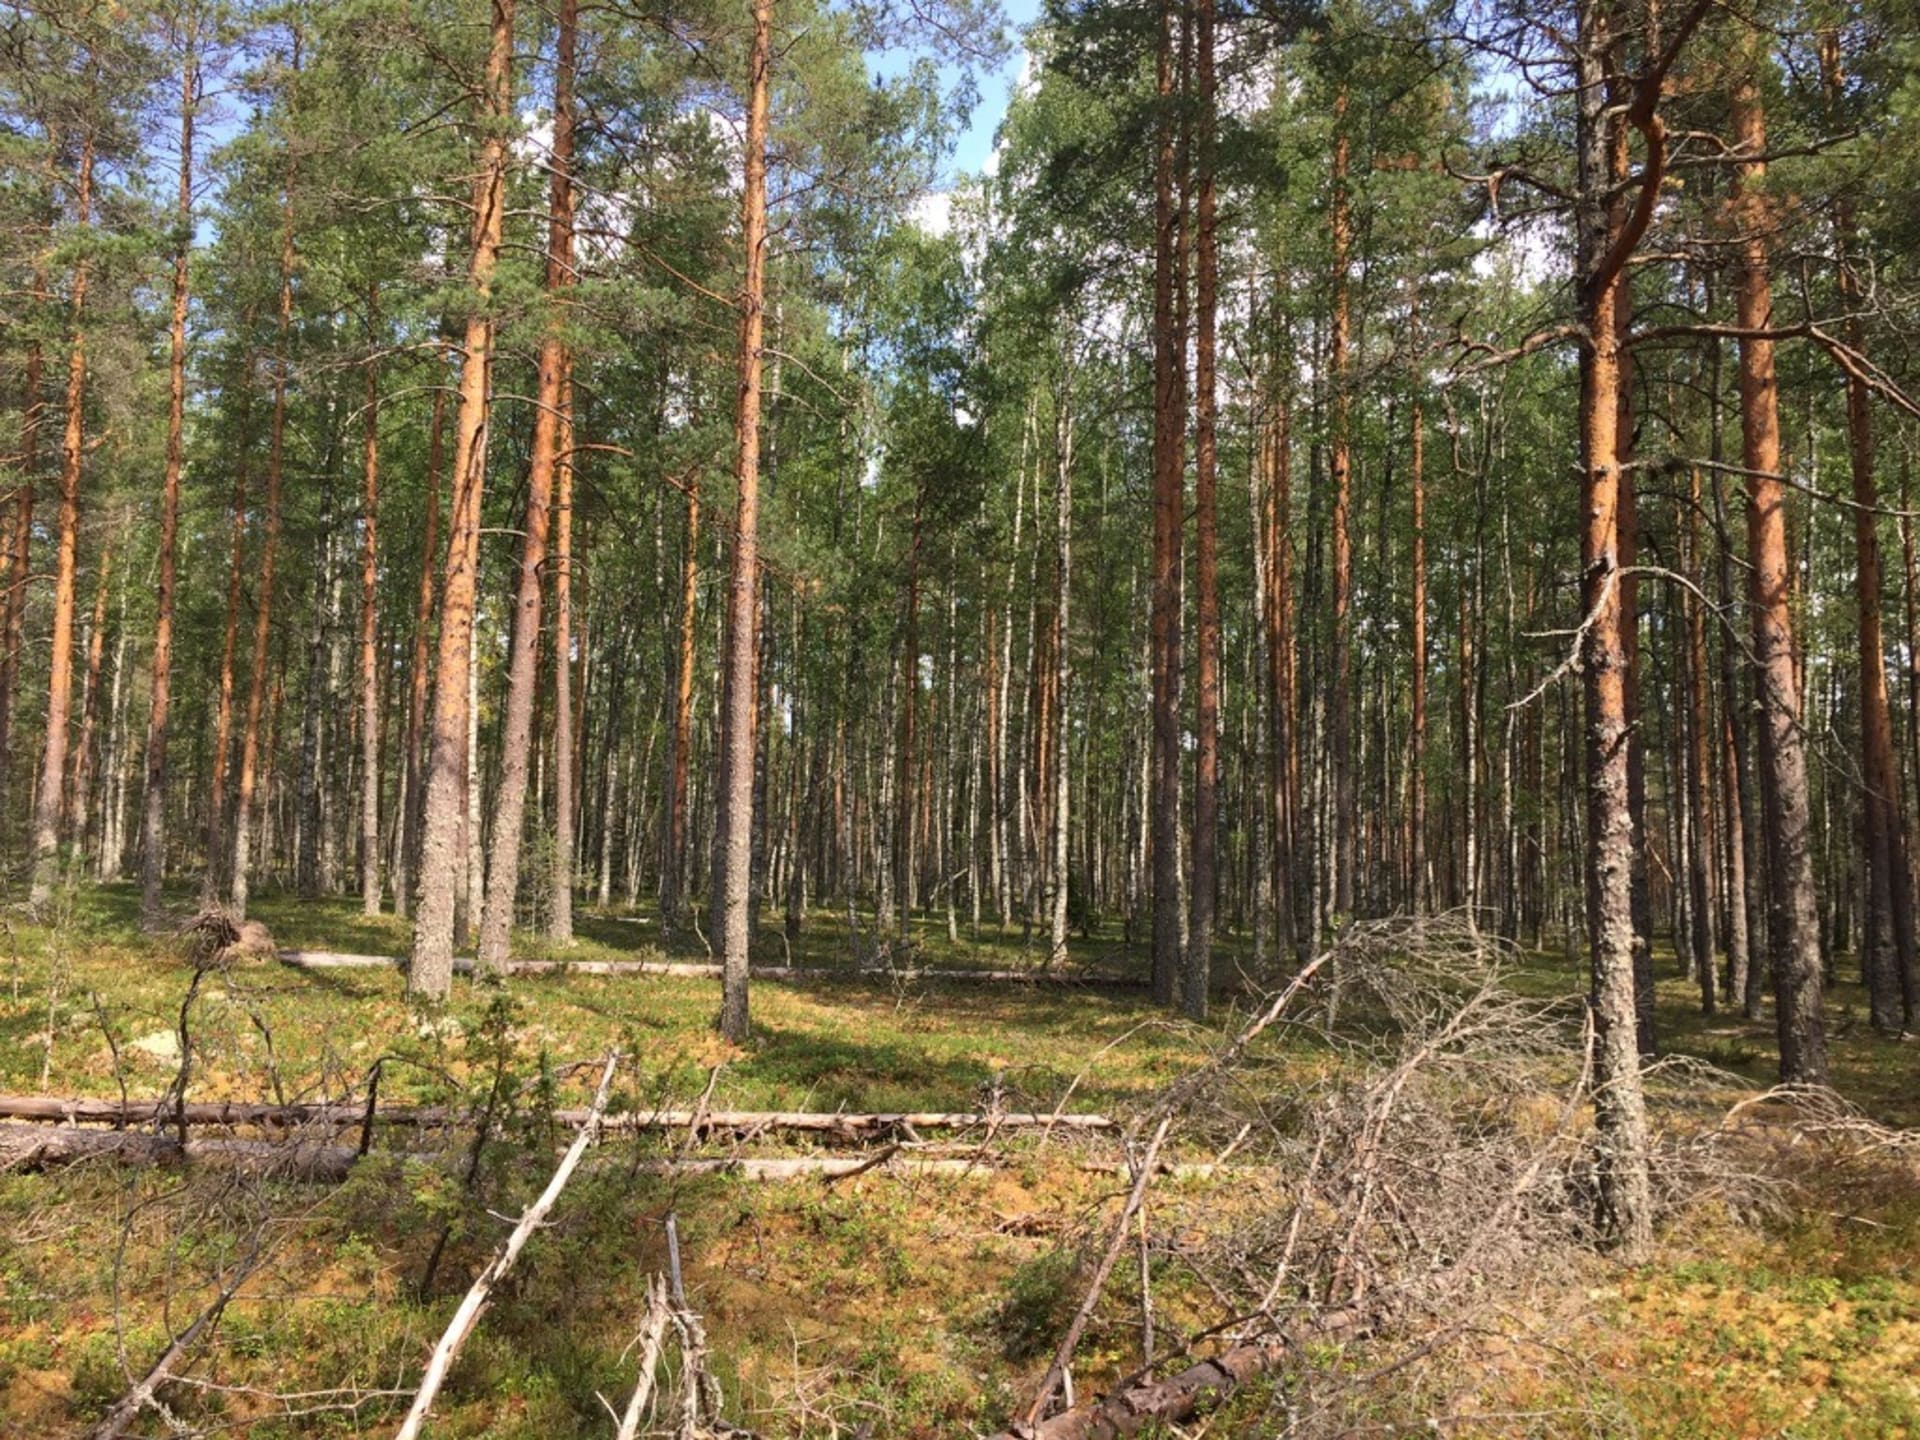 Finnish pine forest.